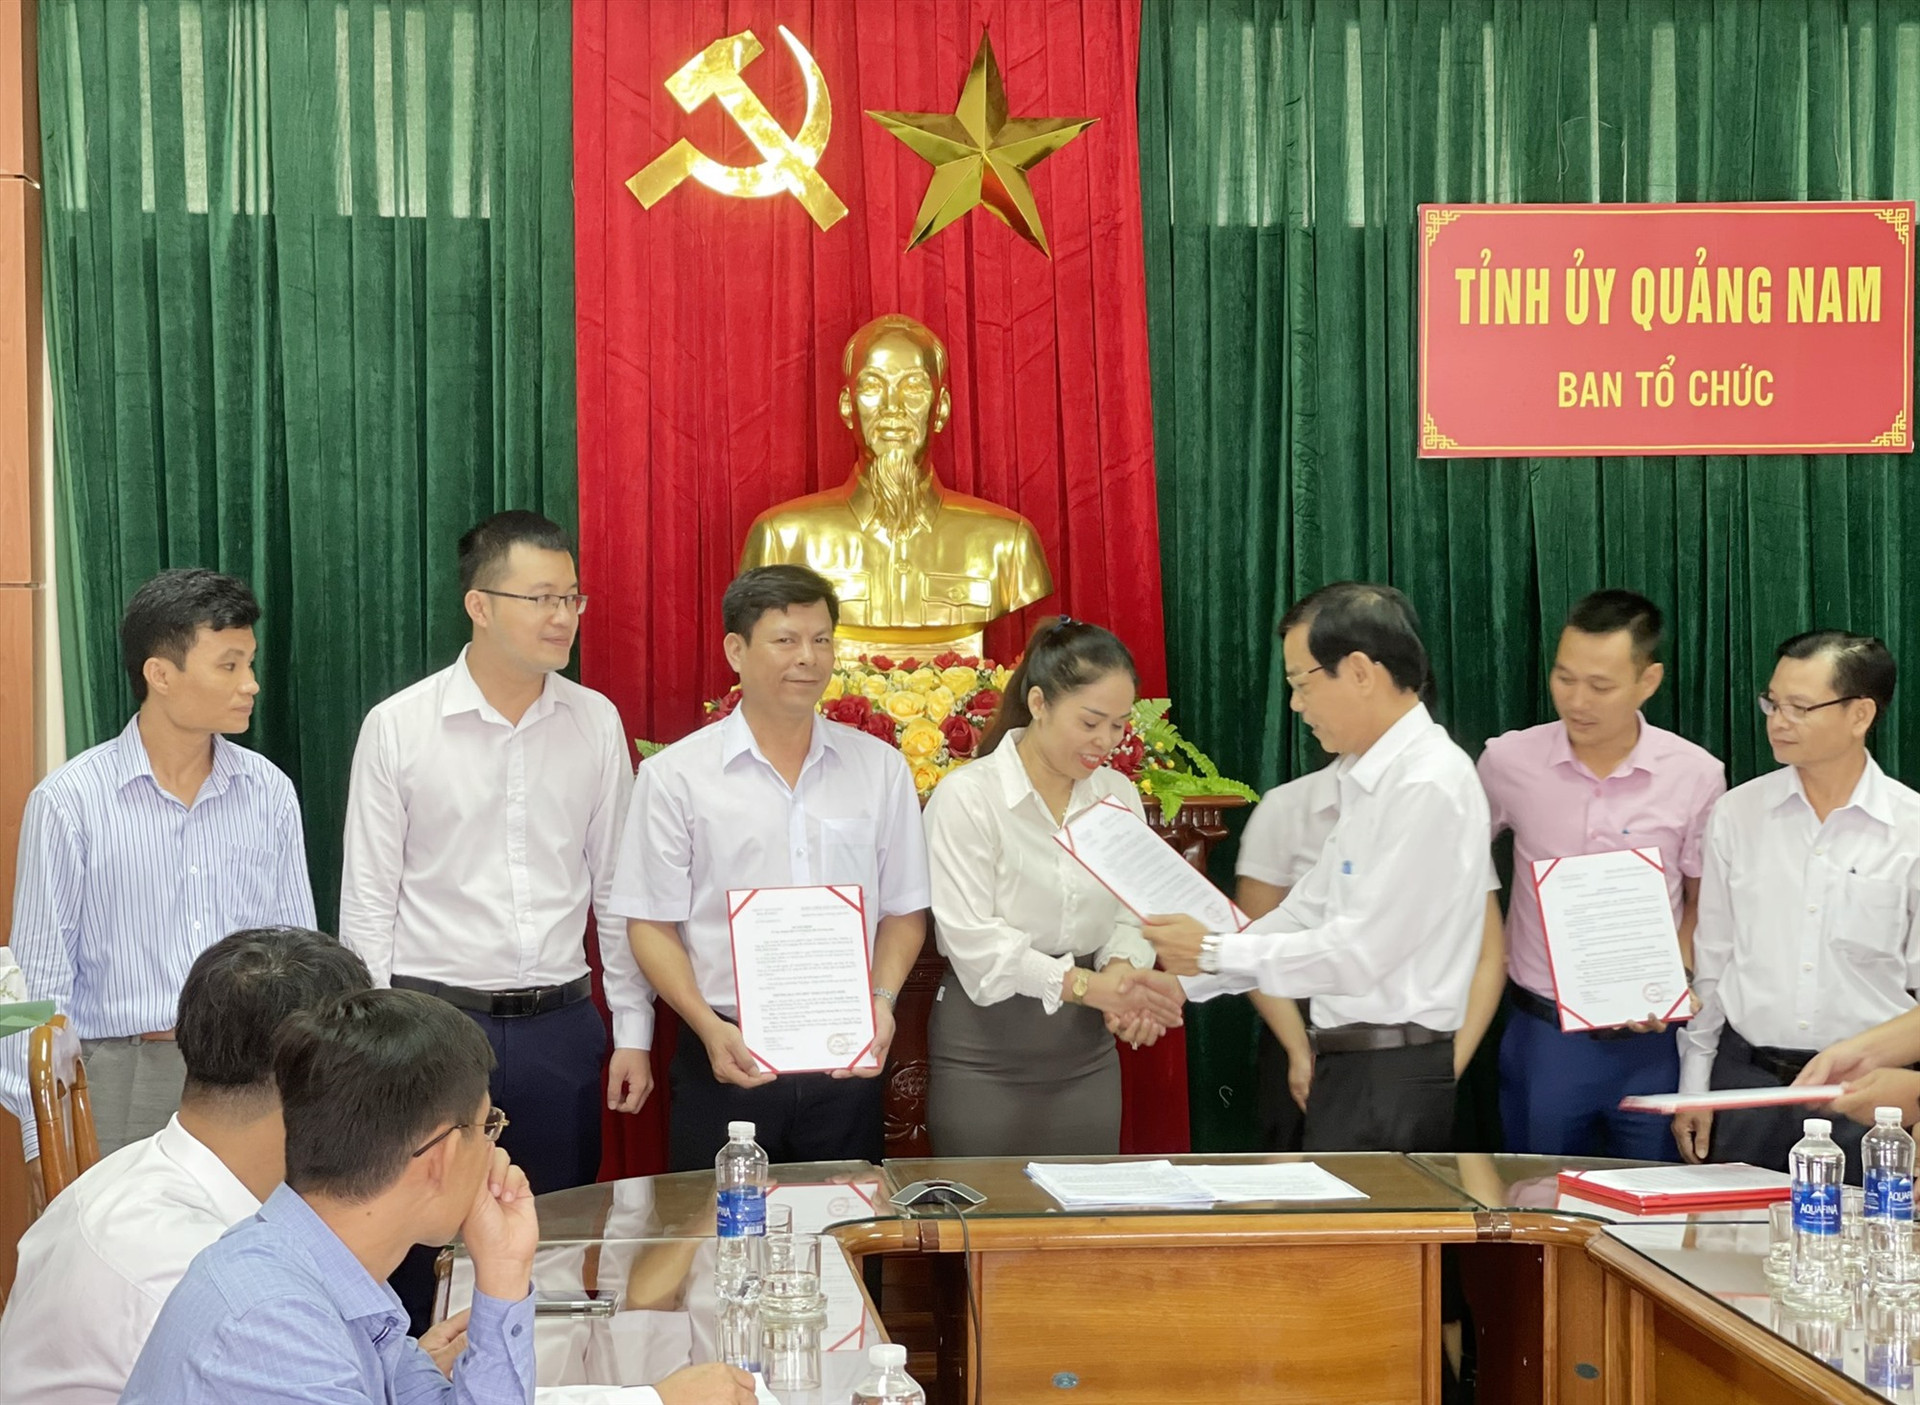 Trưởng ban Tổ chức Tỉnh ủy Nguyễn Chín trao quyết định chuyển đổi vị trí công tác của cán bộ, công chức trong nội bộ cơ quan Ban Tổ chức Tỉnh ủy. N.Đ